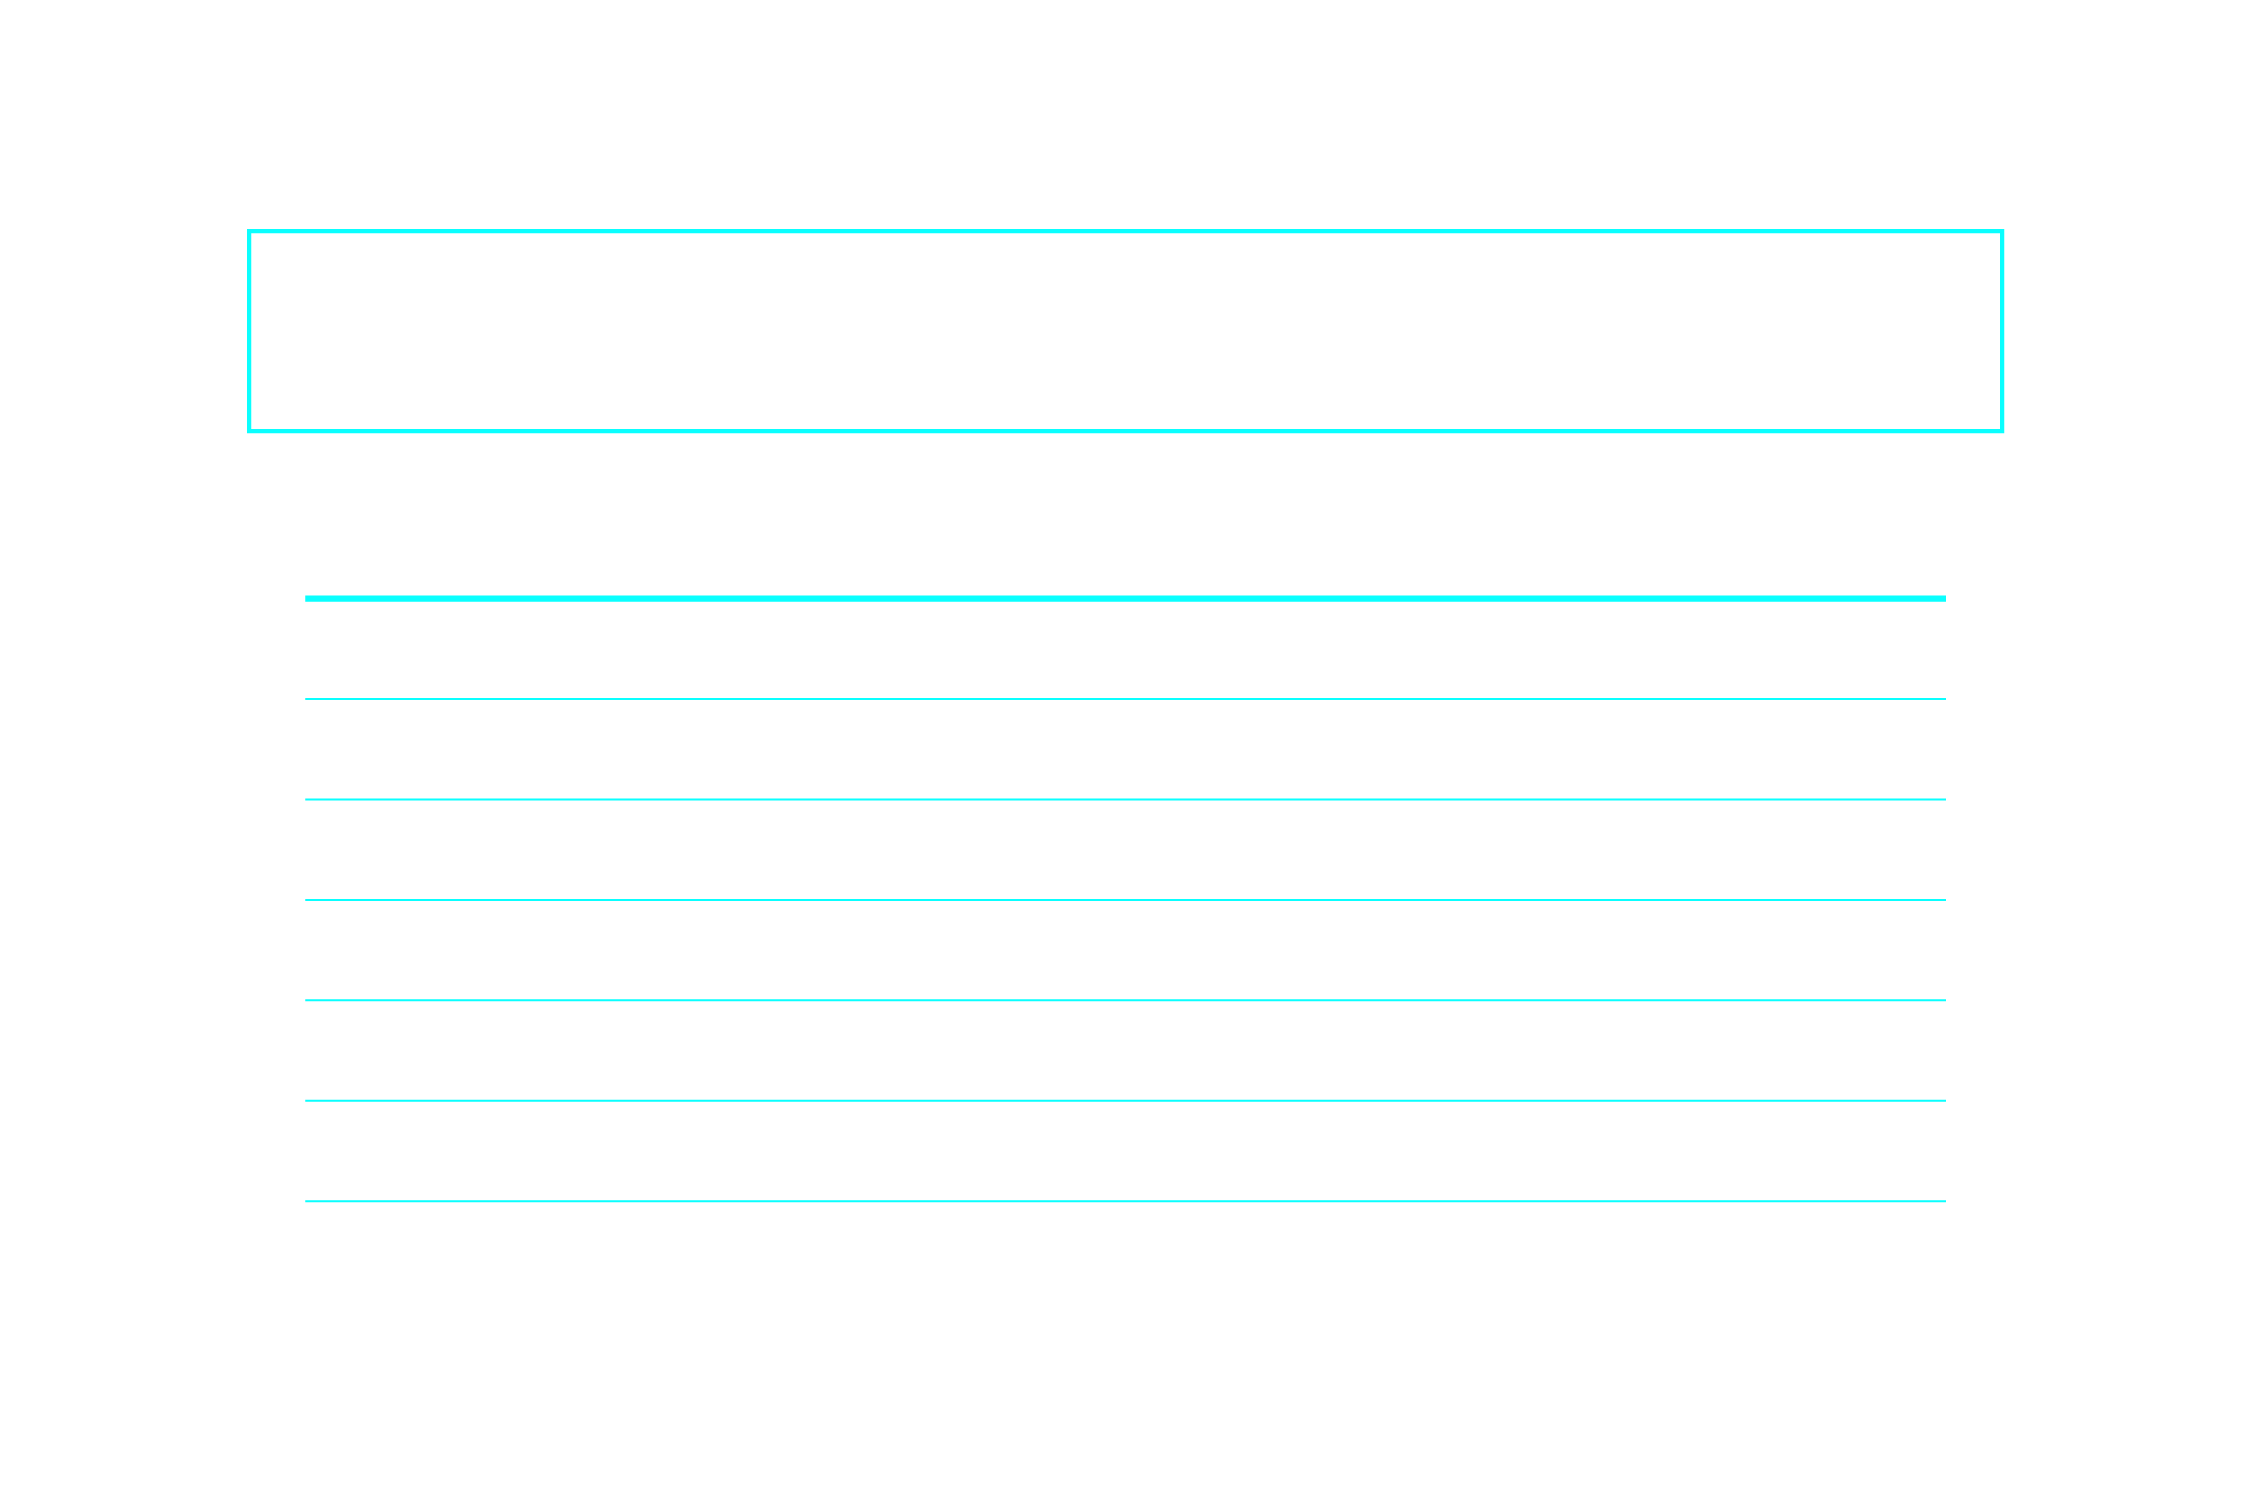 20-year paicoin halving schedule